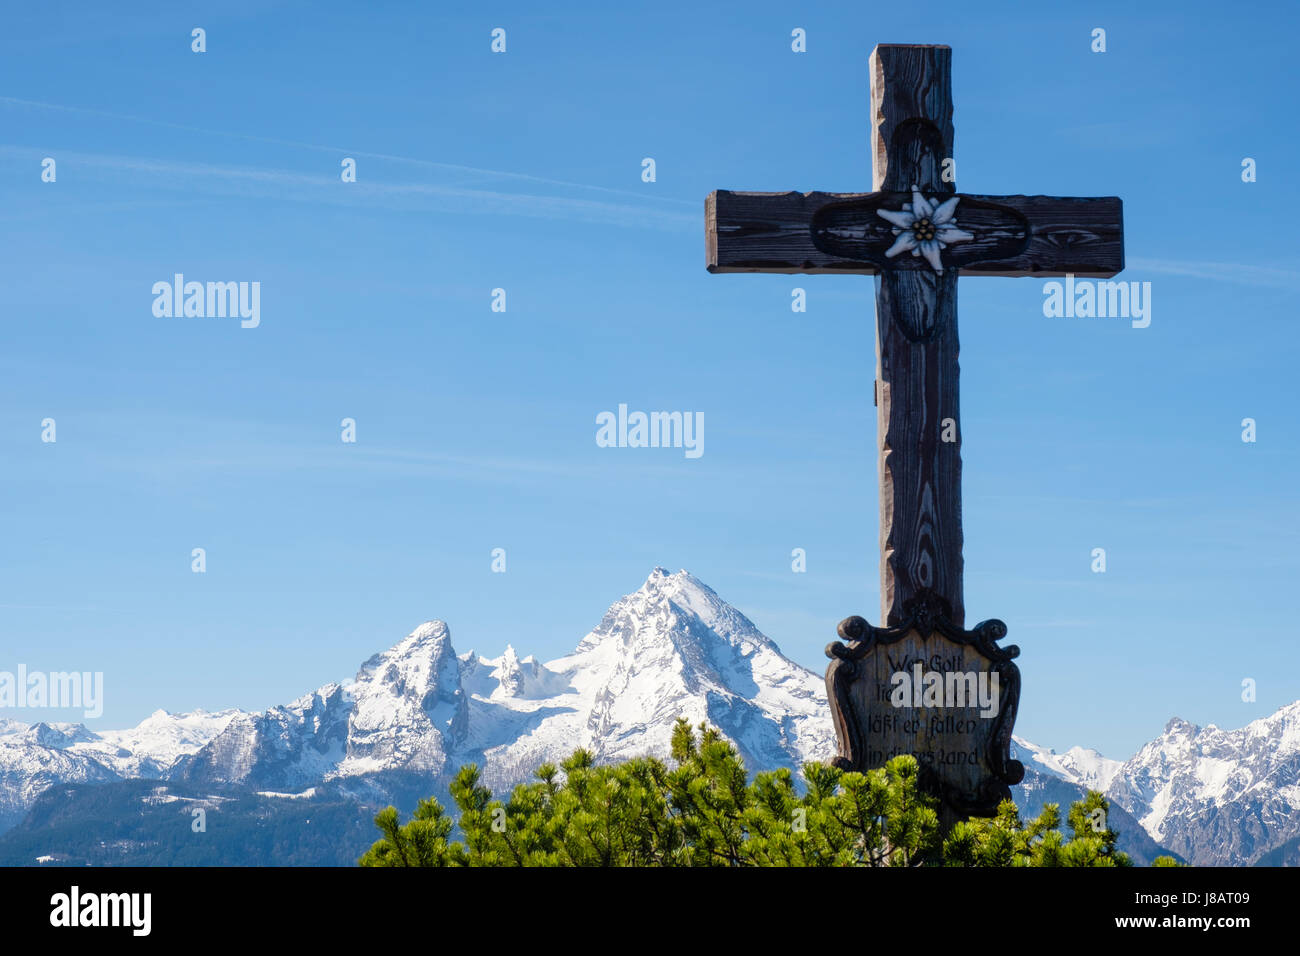 Summit cross of the Kneifelspitze, Watzmann, Berchtesgaden, Berchtesgaden  National Park, Berchtesgadener Land, Bavaria, Germany Stock Photo - Alamy